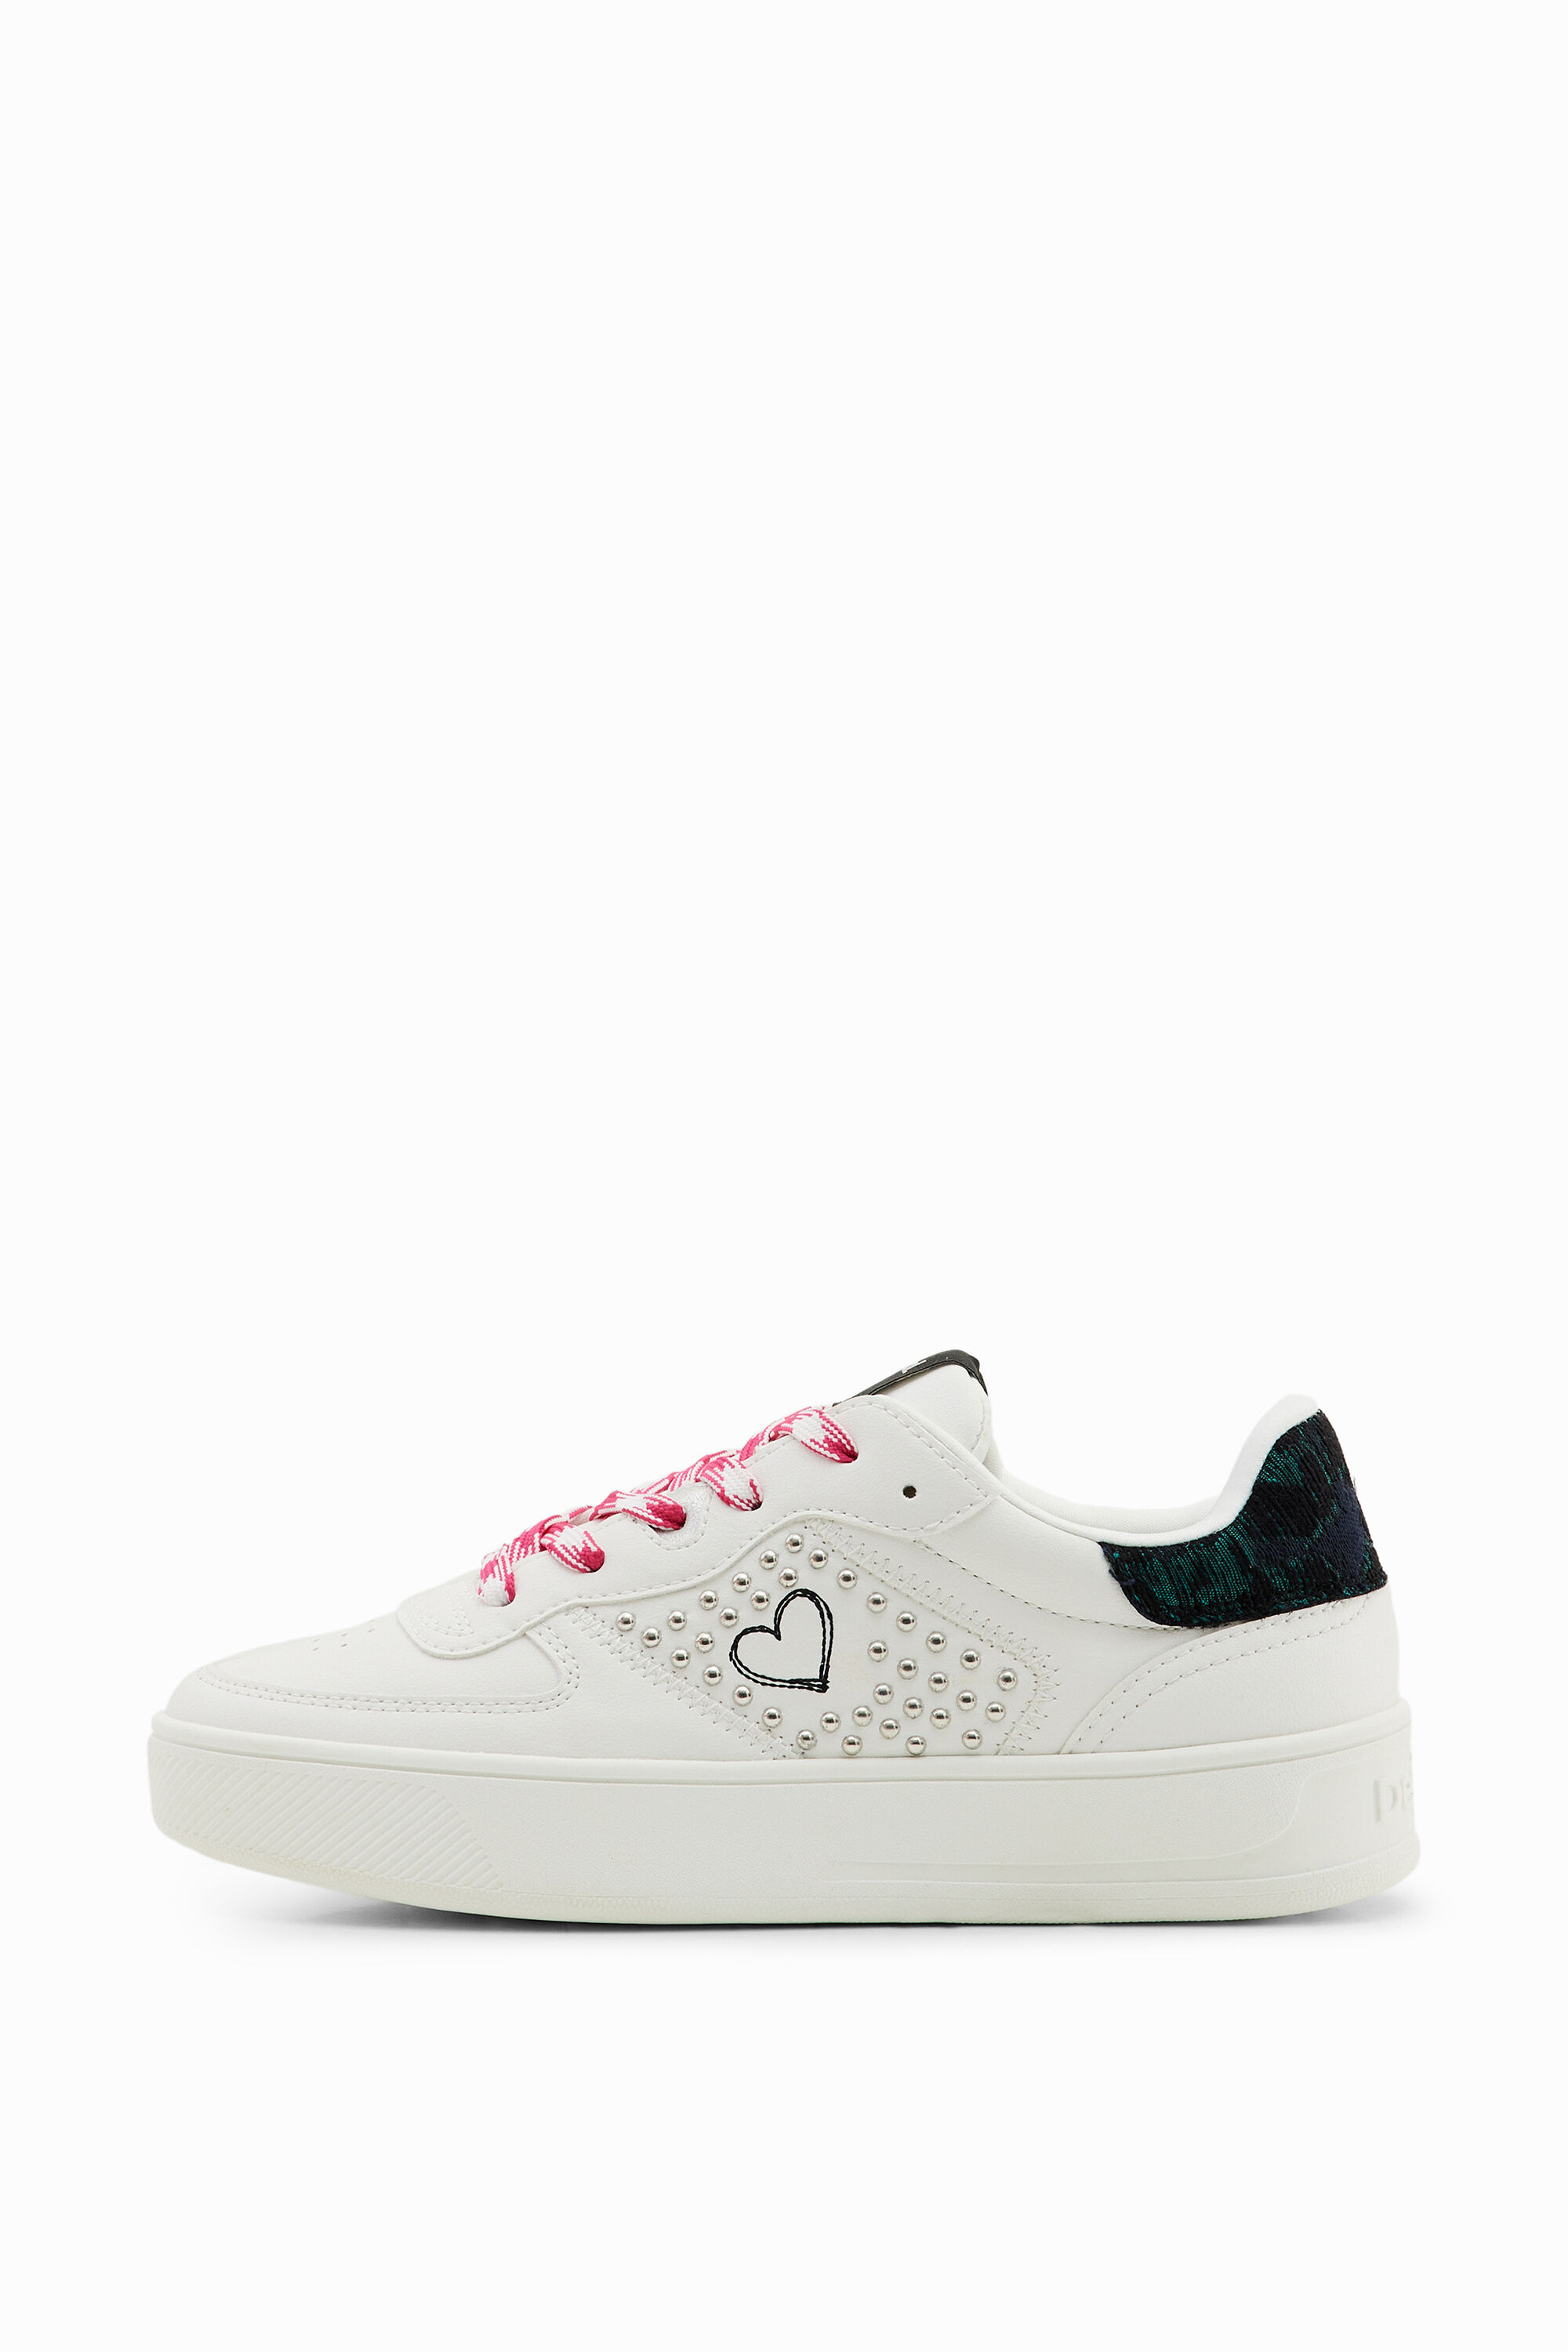 Lacoste - Women's L004 Platform Textile Colour Block Sneakers Size 37